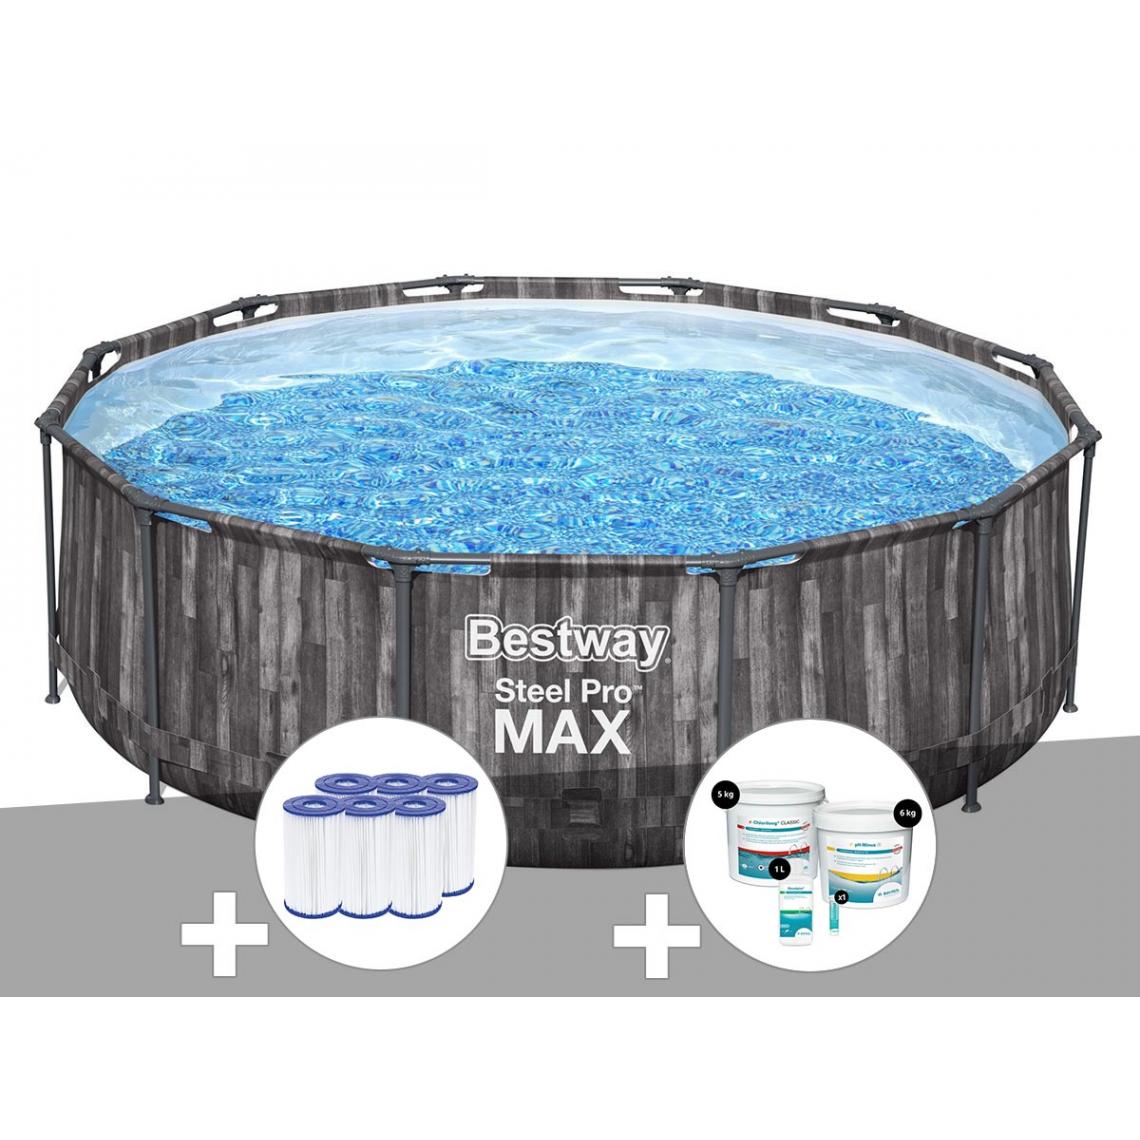 Bestway - Kit piscine tubulaire ronde Bestway Steel Pro Max décor bois 3,66 x 1,00 m + 6 cartouches de filtration + Kit de traitement au chlore - Piscine Tubulaire